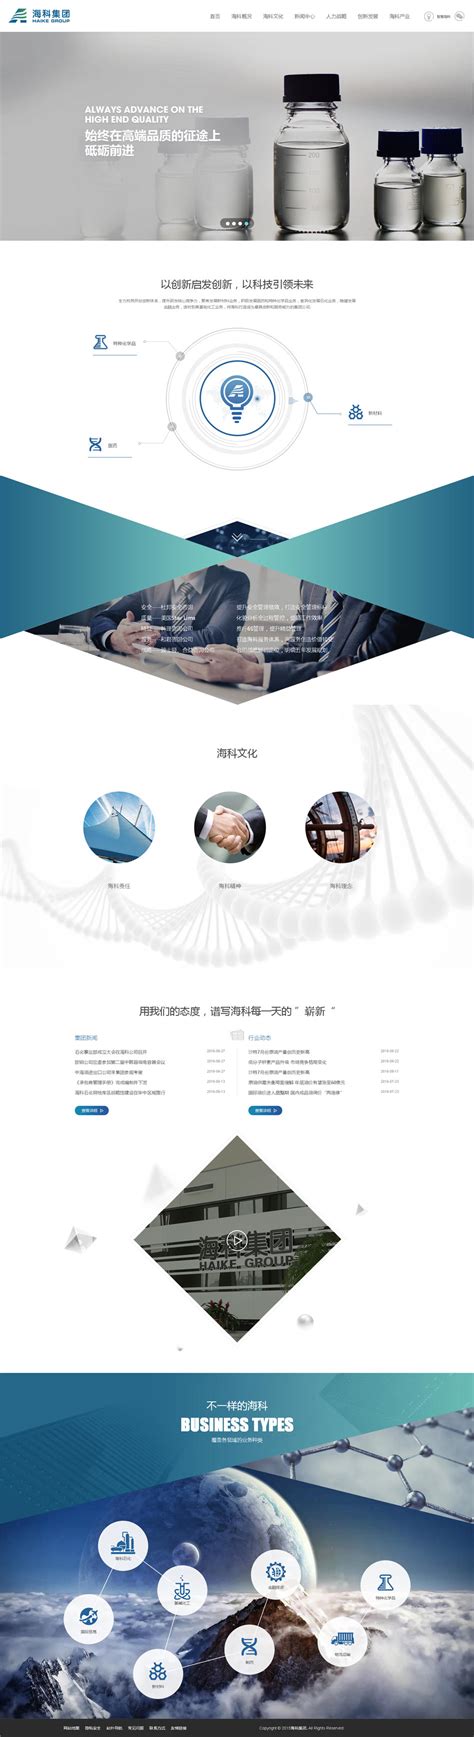 我要航海网综合资讯门户最全面的帆船和航海的技术网站设计_网站案例_郑州网站建设 - 新速科技